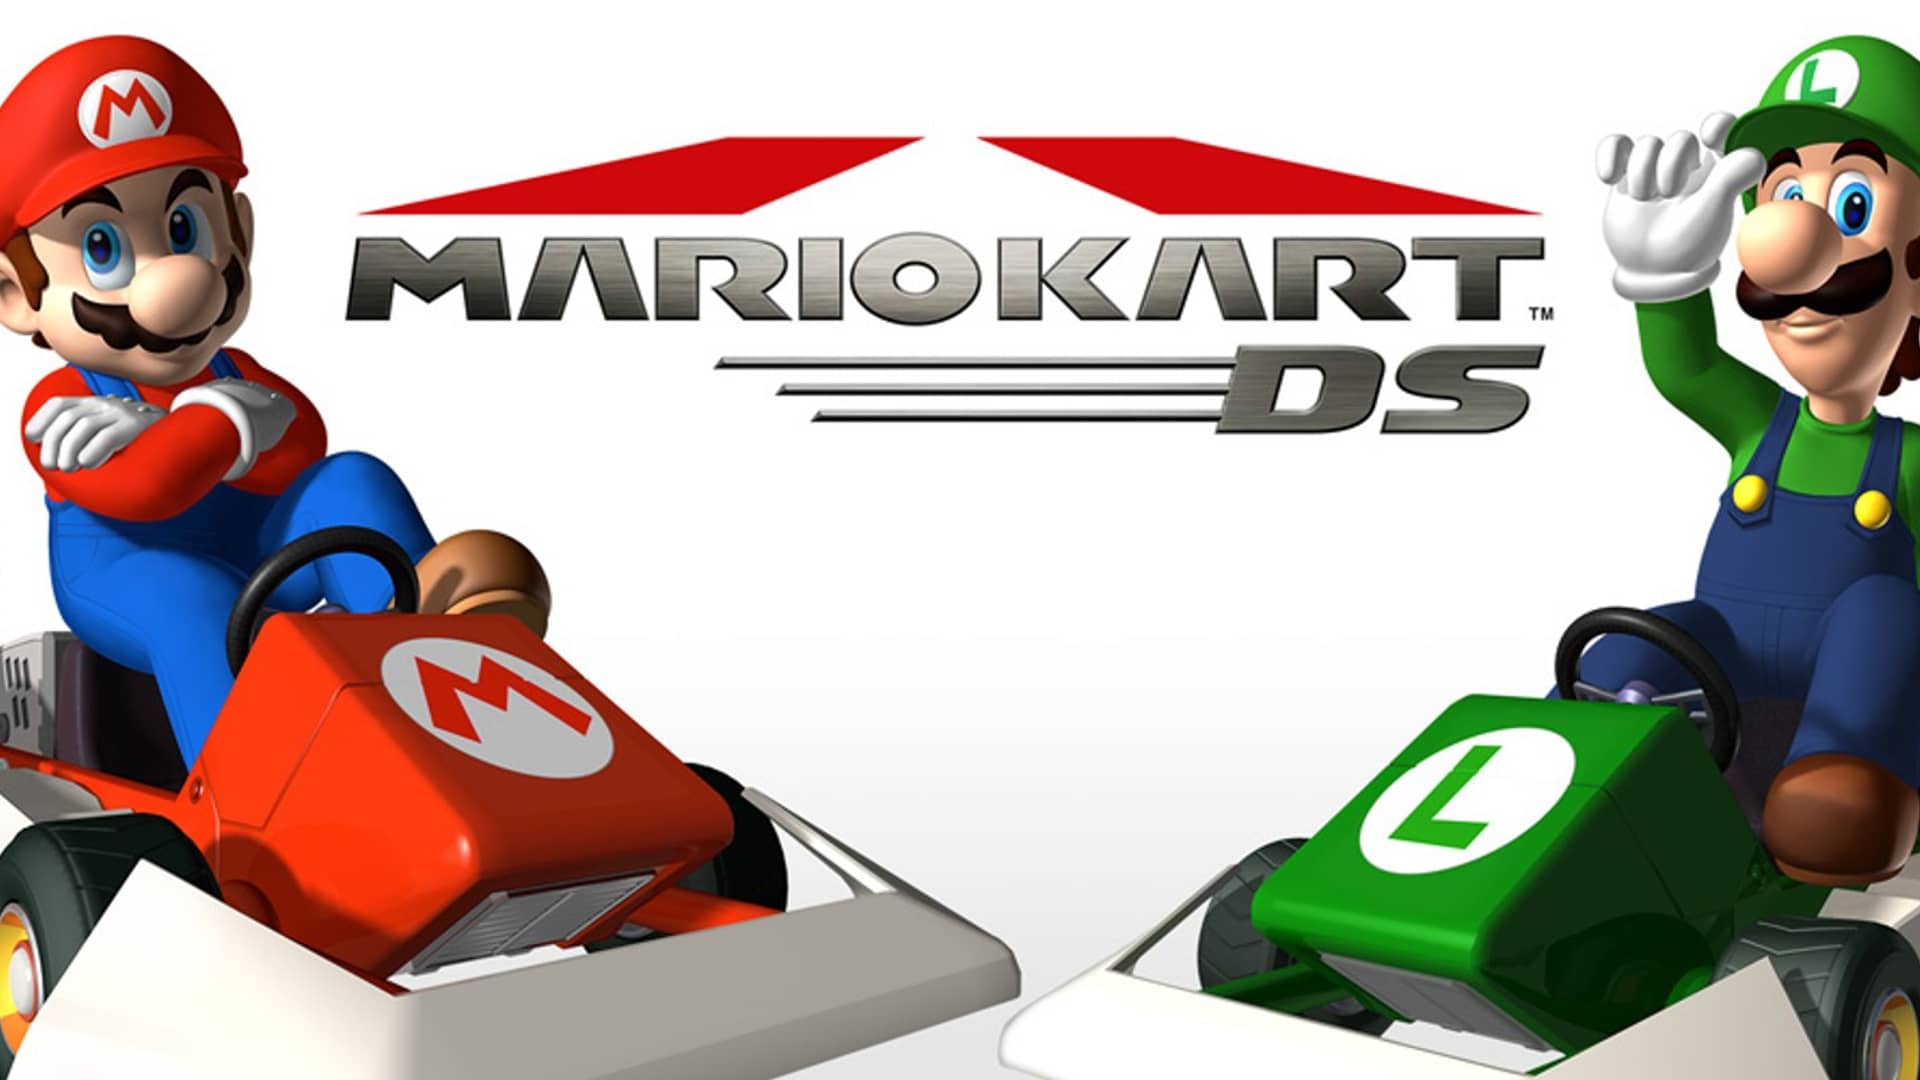 artwork del juego Mario Kart que es uno de los mejores juegos para la ds